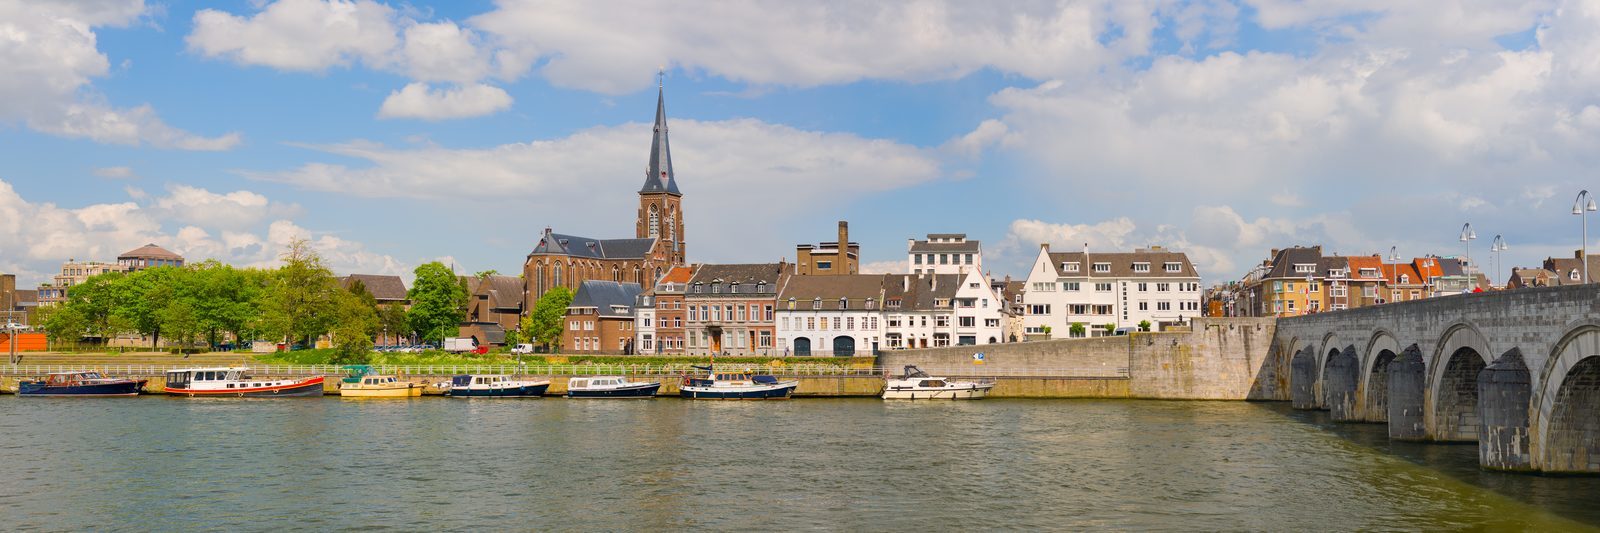 Wochenende in Maastricht